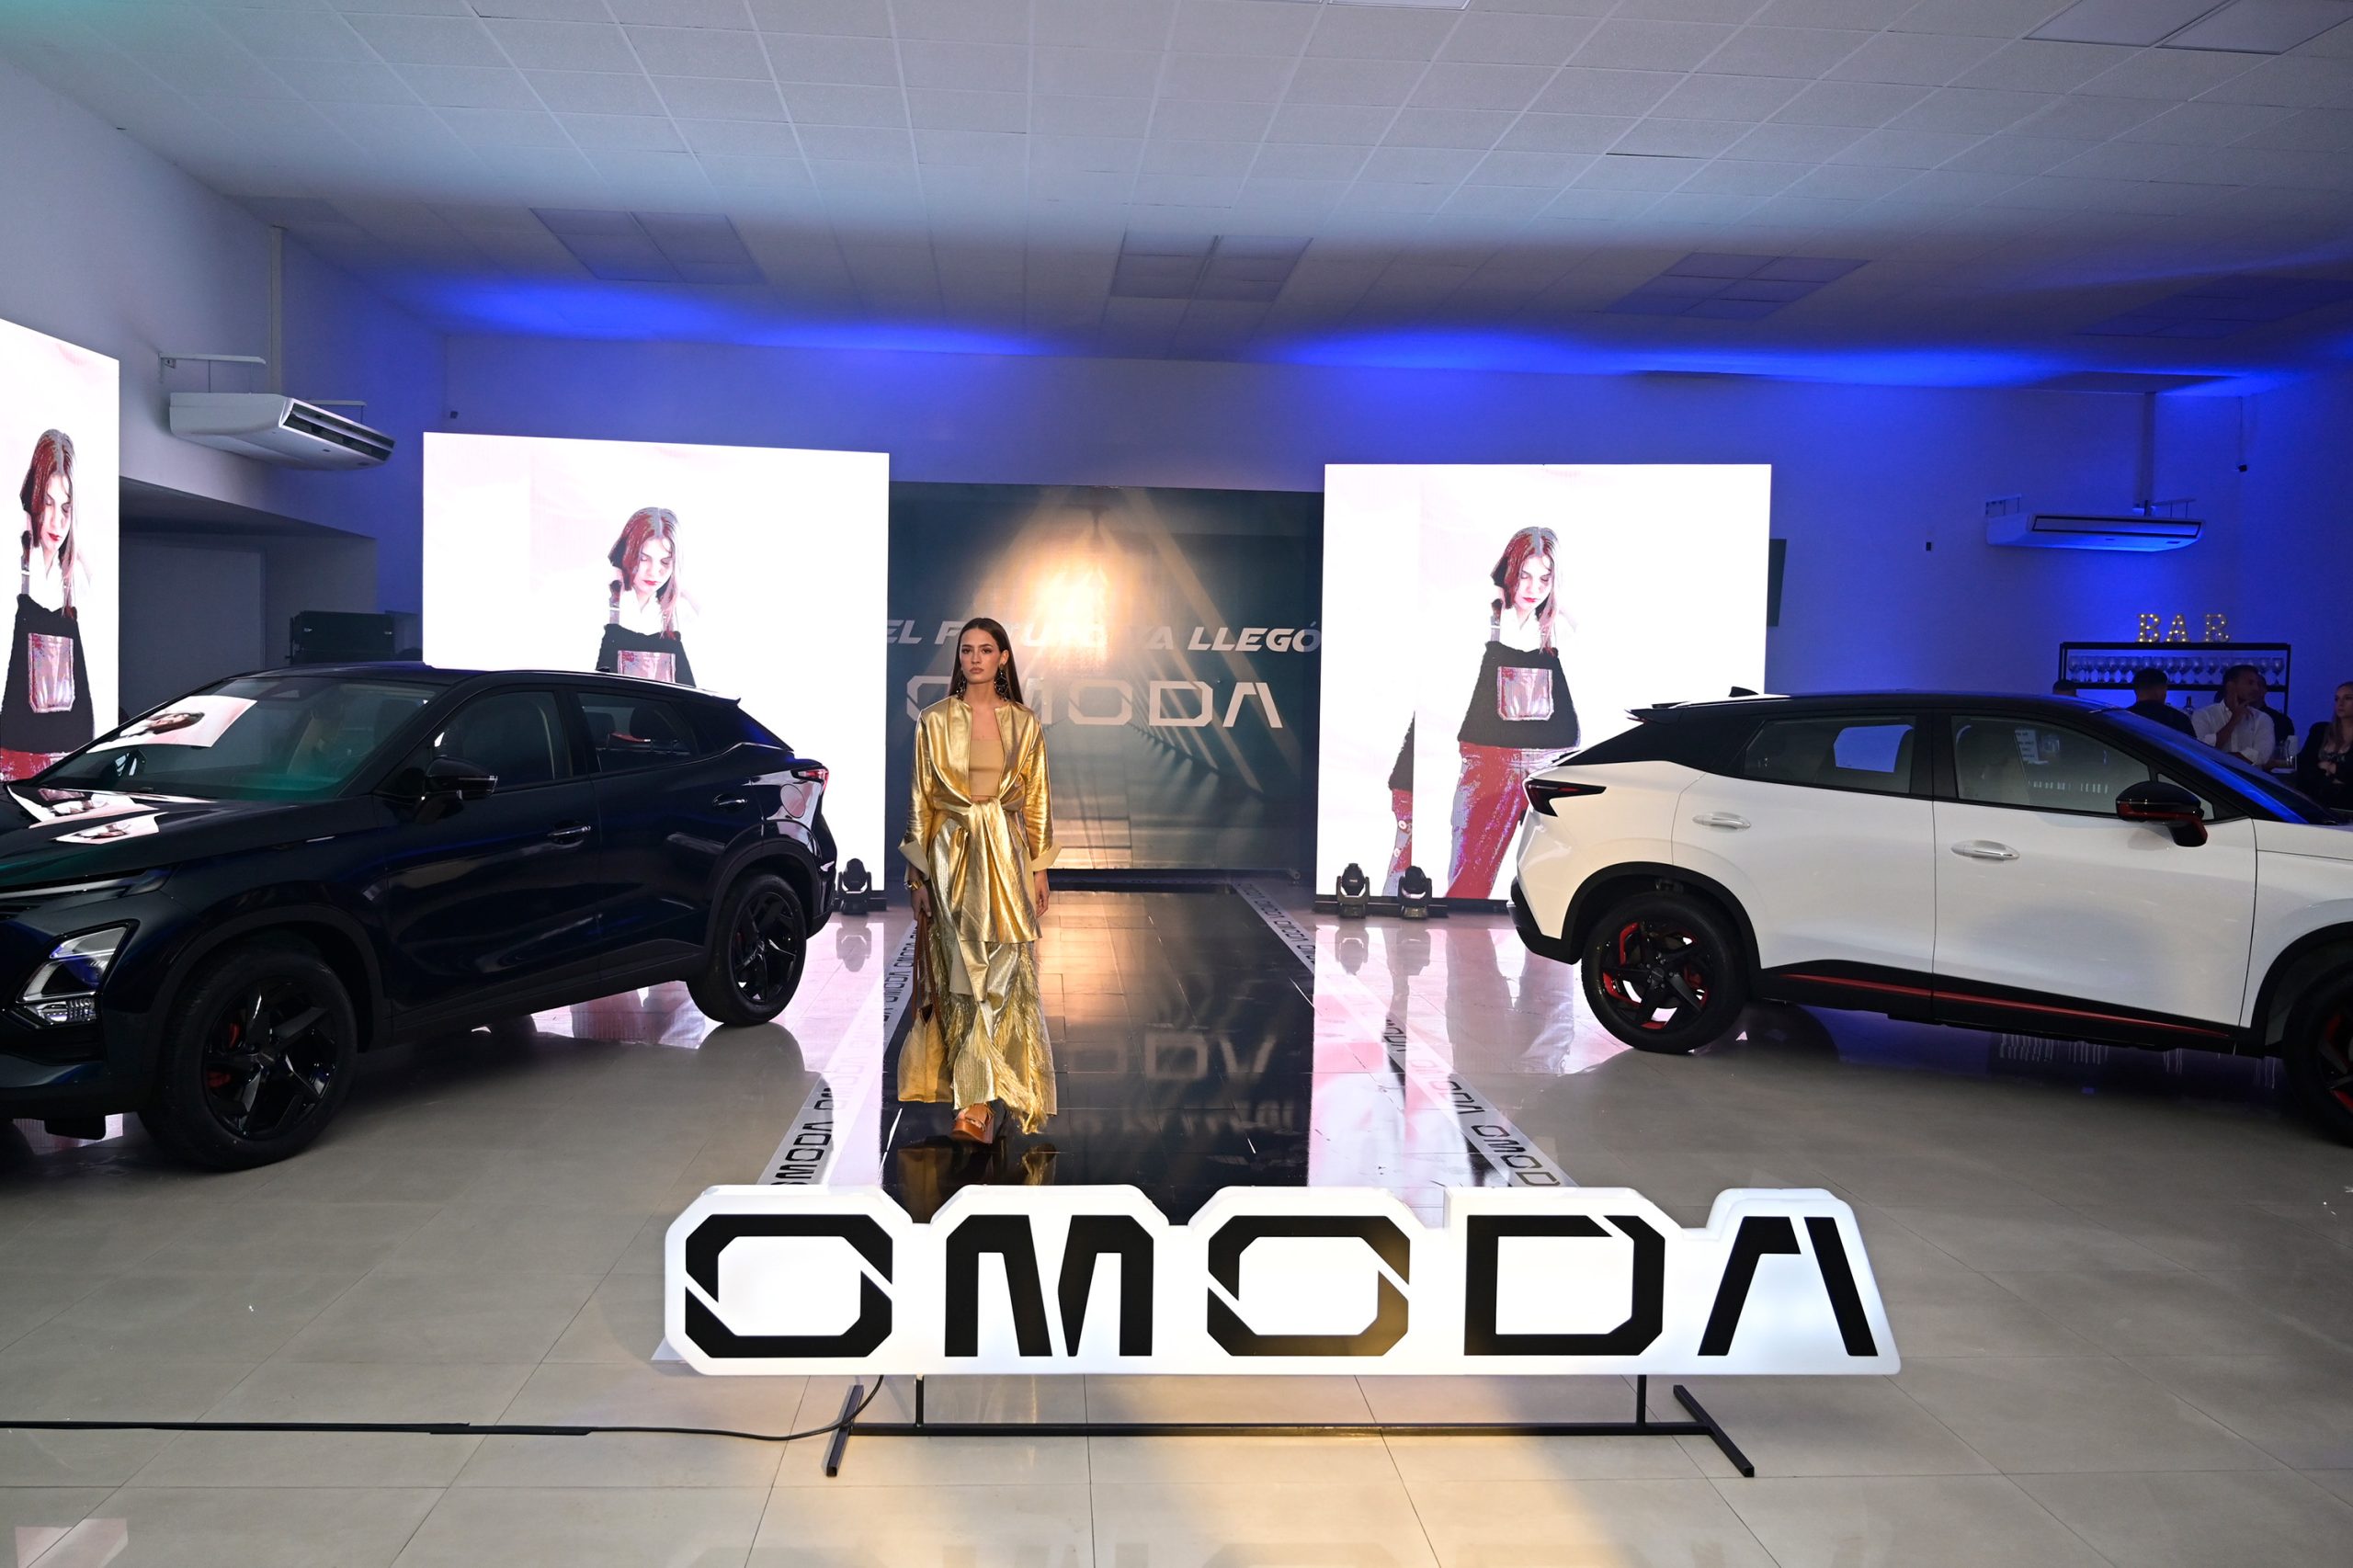 Omoda llega a Uruguay fusionado con la moda vanguardista 